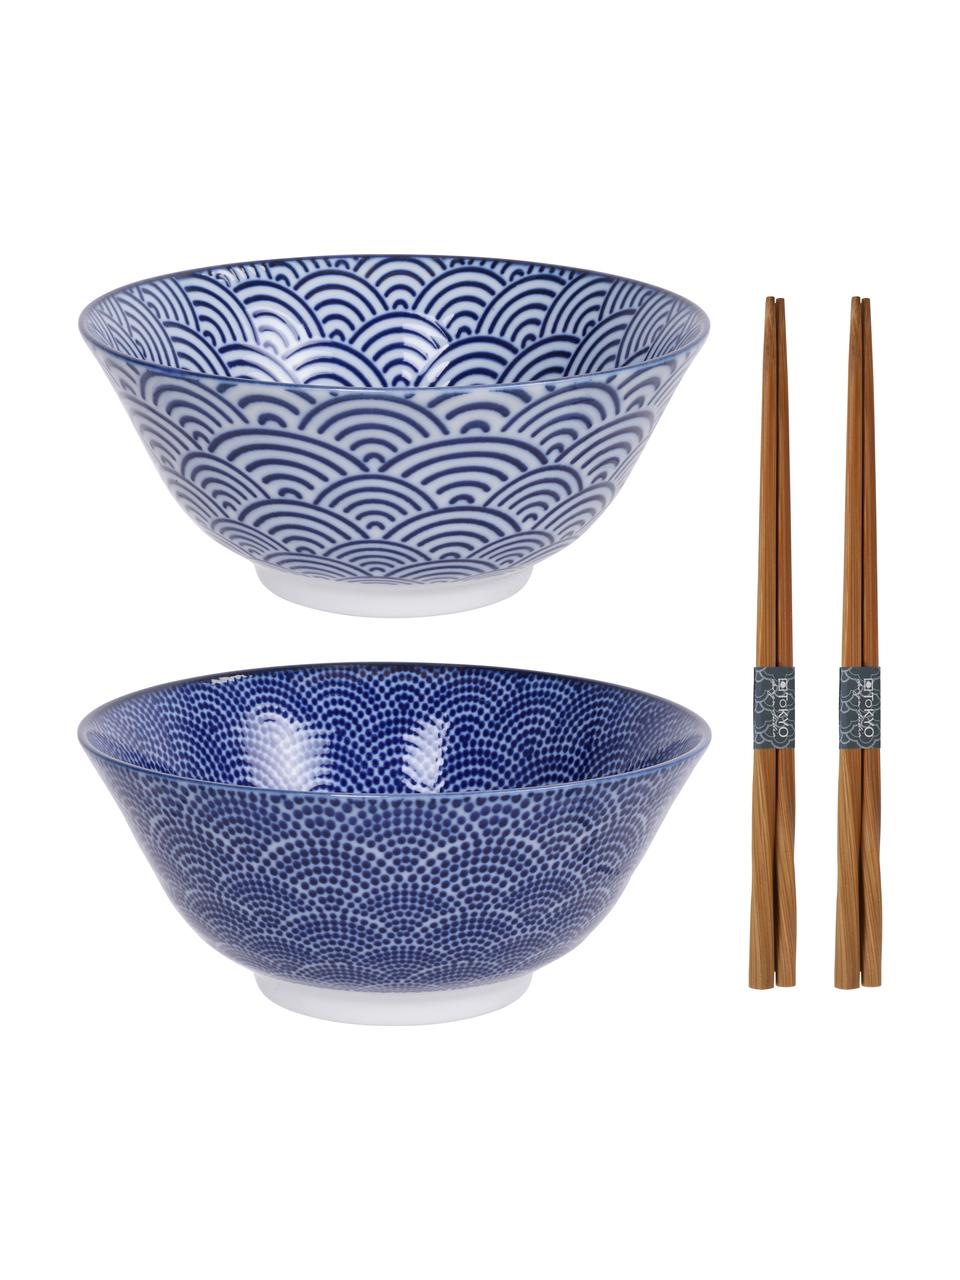 Handgemachte Porzellan-Schälchen Nippon in Blau/Weiß mit Essstäbchen, 4-er Set, Schälchen: Porzellan, Blau, Dunkles Holz, Set mit verschiedenen Größen